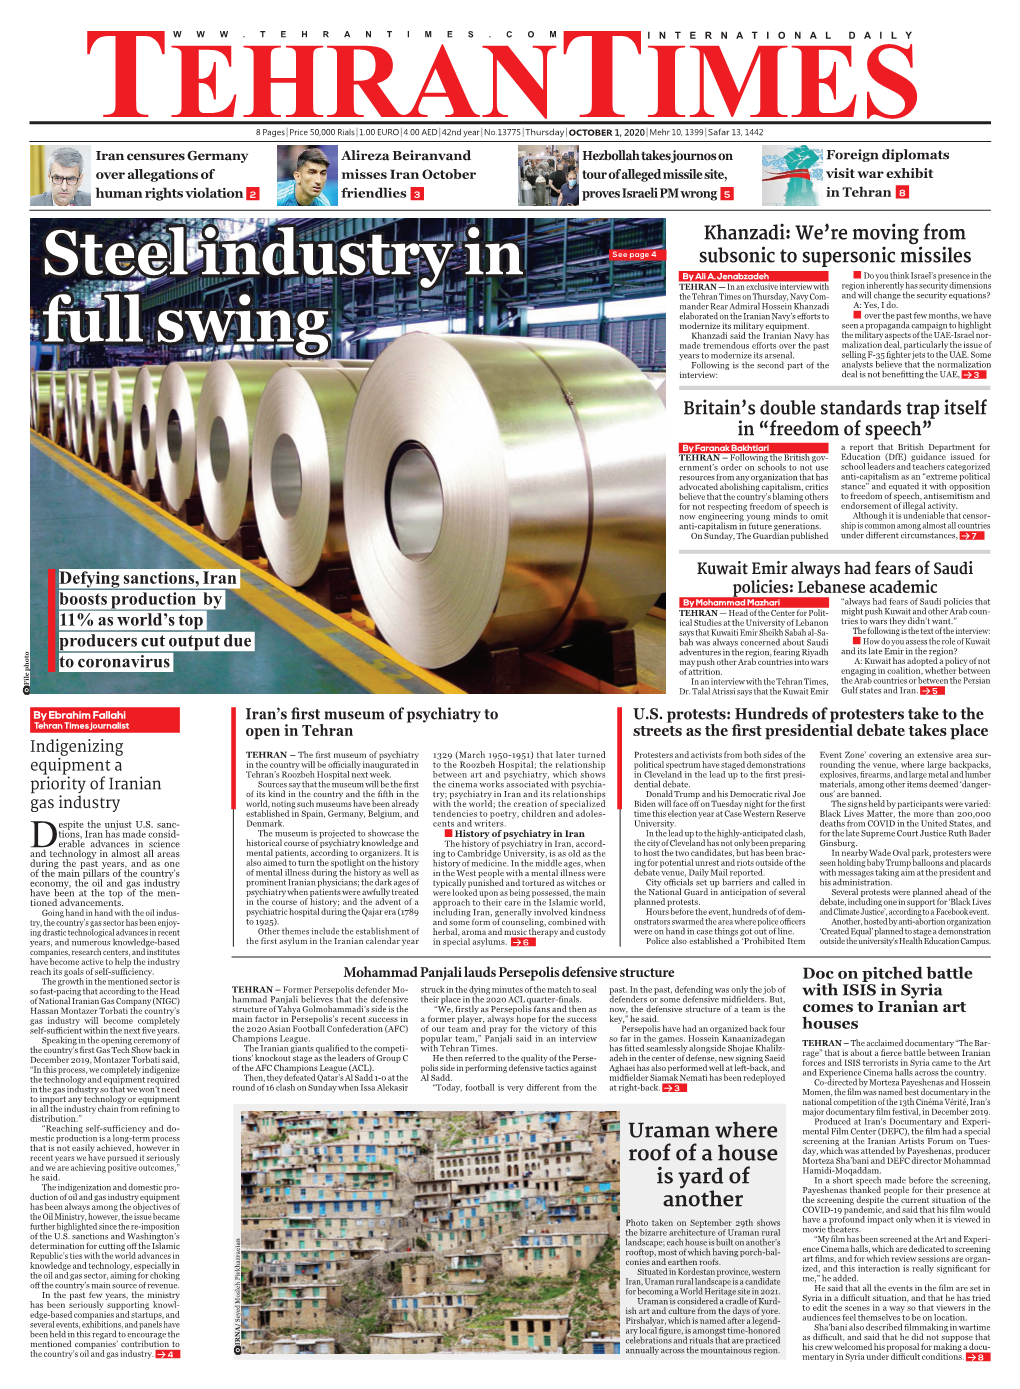 Steel Industry in Full Swing